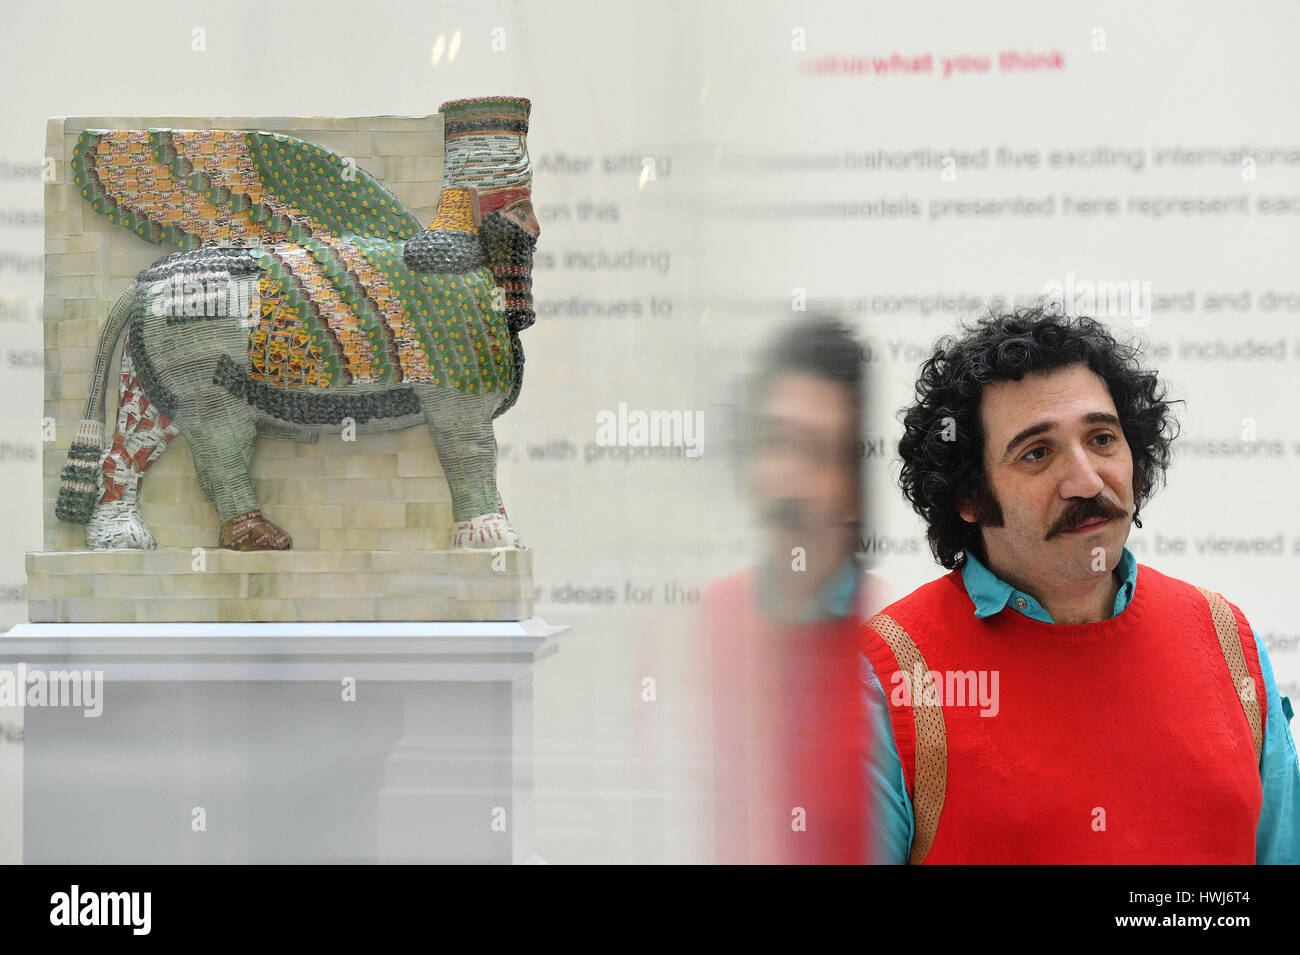 Michael Rakowitz avec son design, l'ennemi invisible ne devrait pas exister, l'une des deux commissions pour Trafalgar Square's Quatrième soubassement à la National Gallery de Londres. Banque D'Images